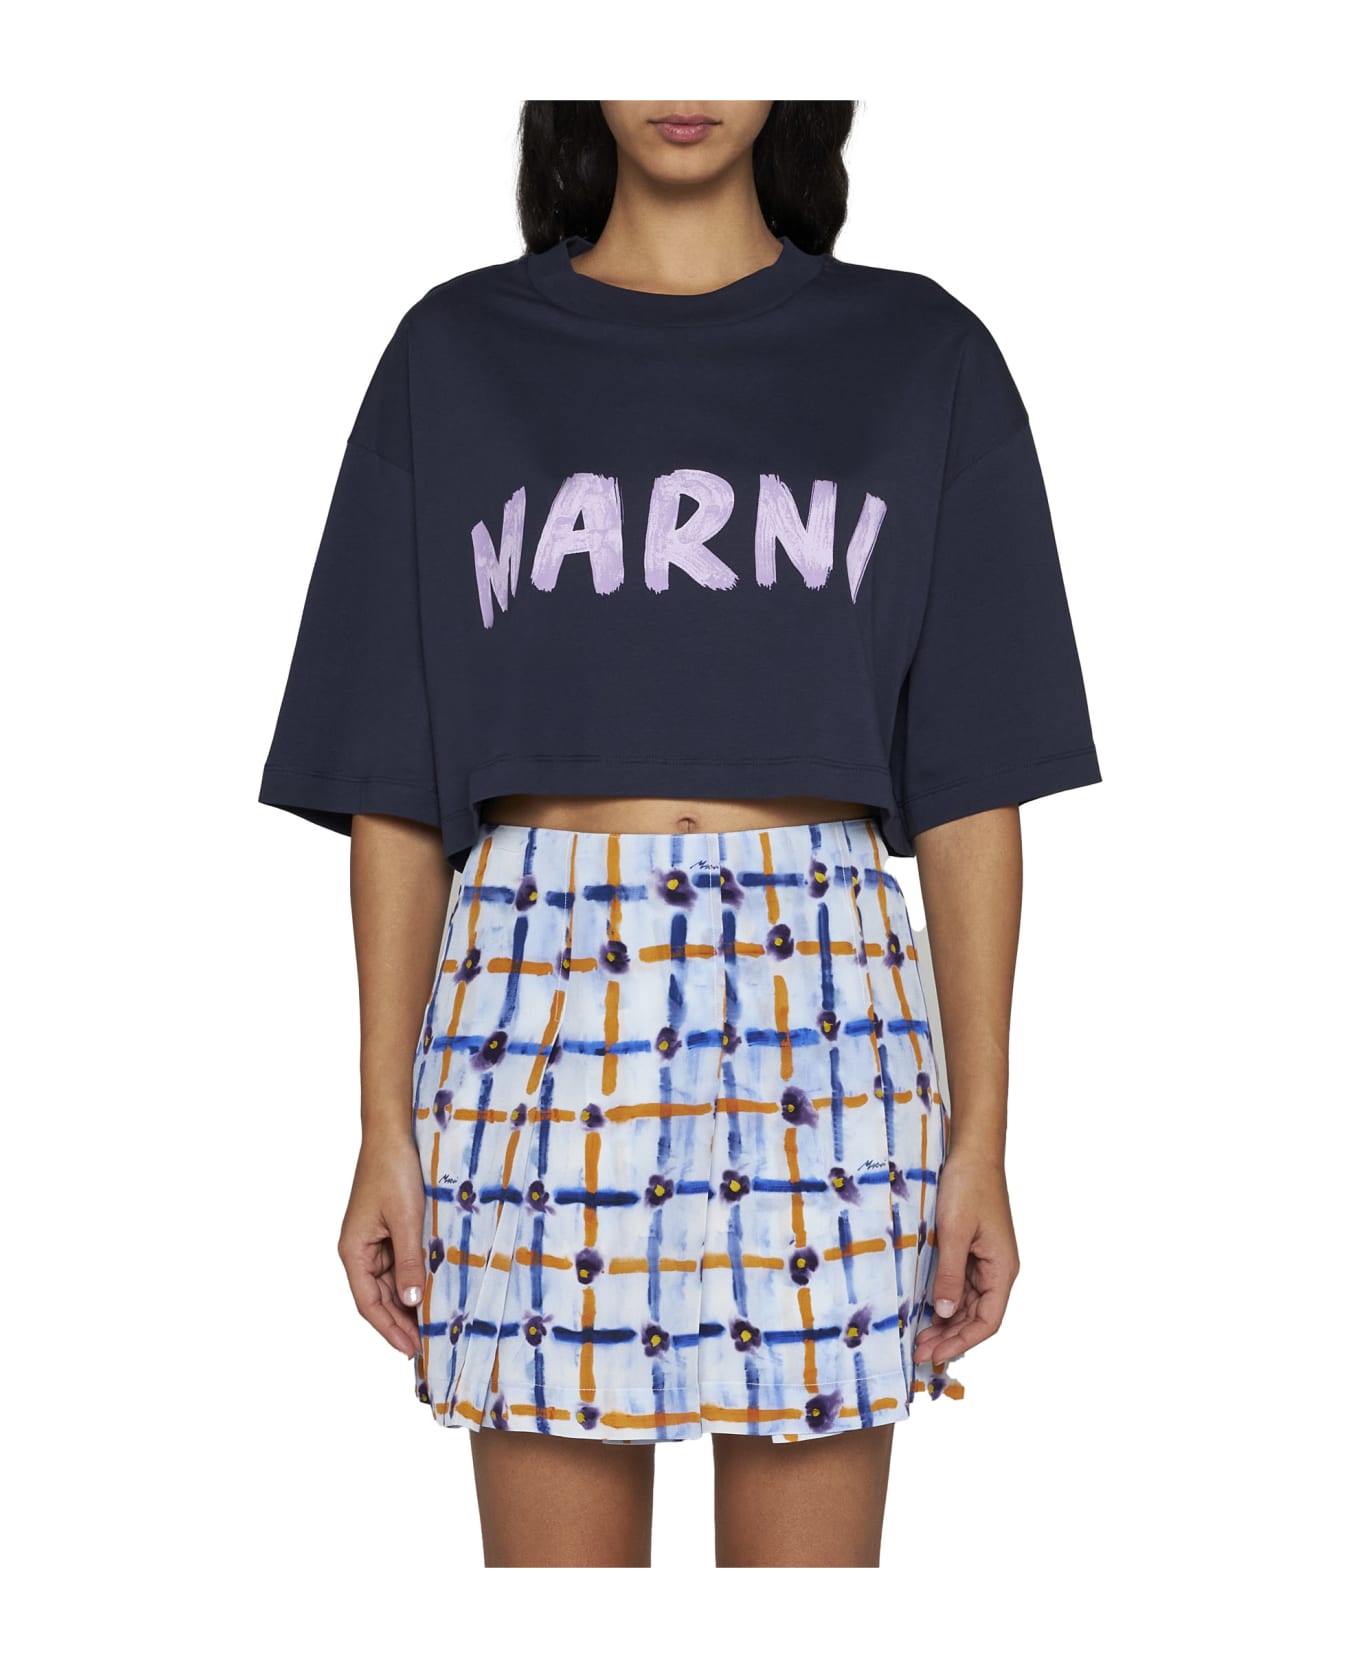 Marni T-Shirt - Blublack Tシャツ